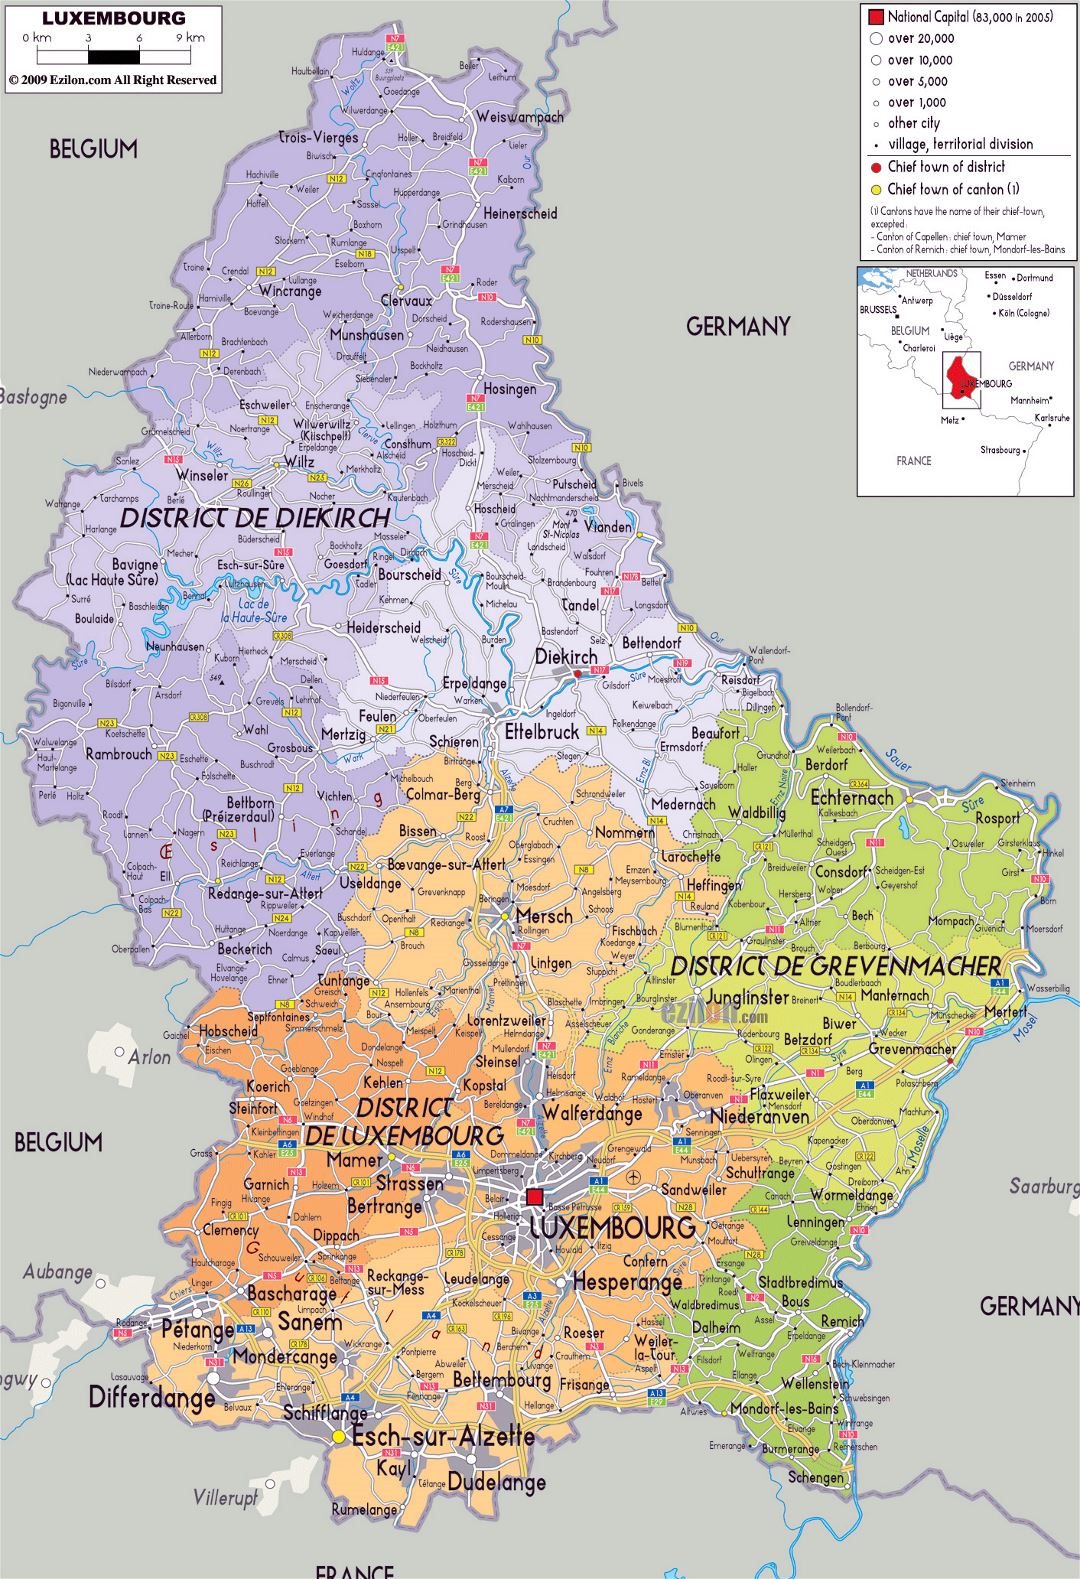 Grande mapa político y administrativo de Luxemburgo con carreteras, ciudades y aeropuertos